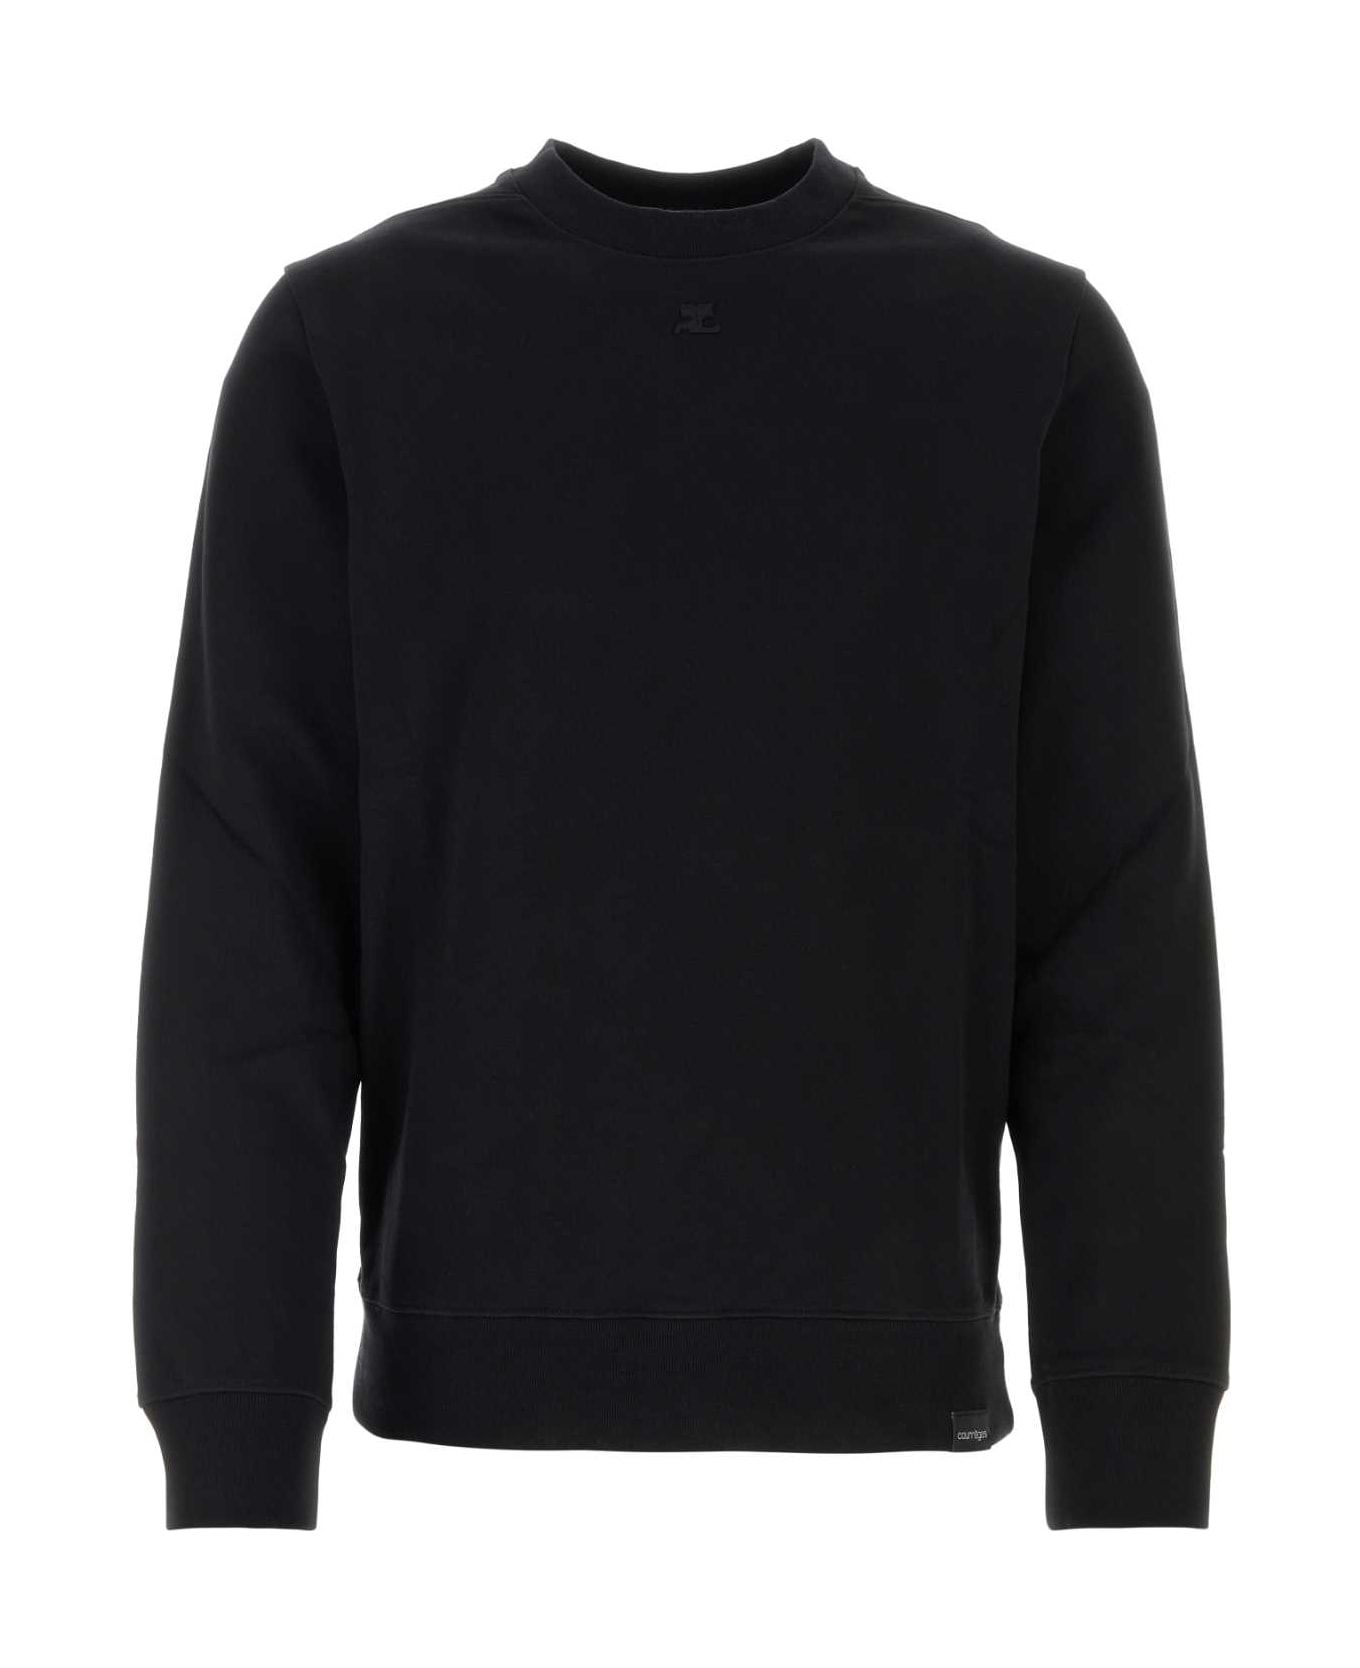 Courrèges Black Cotton Sweatshirt - Black